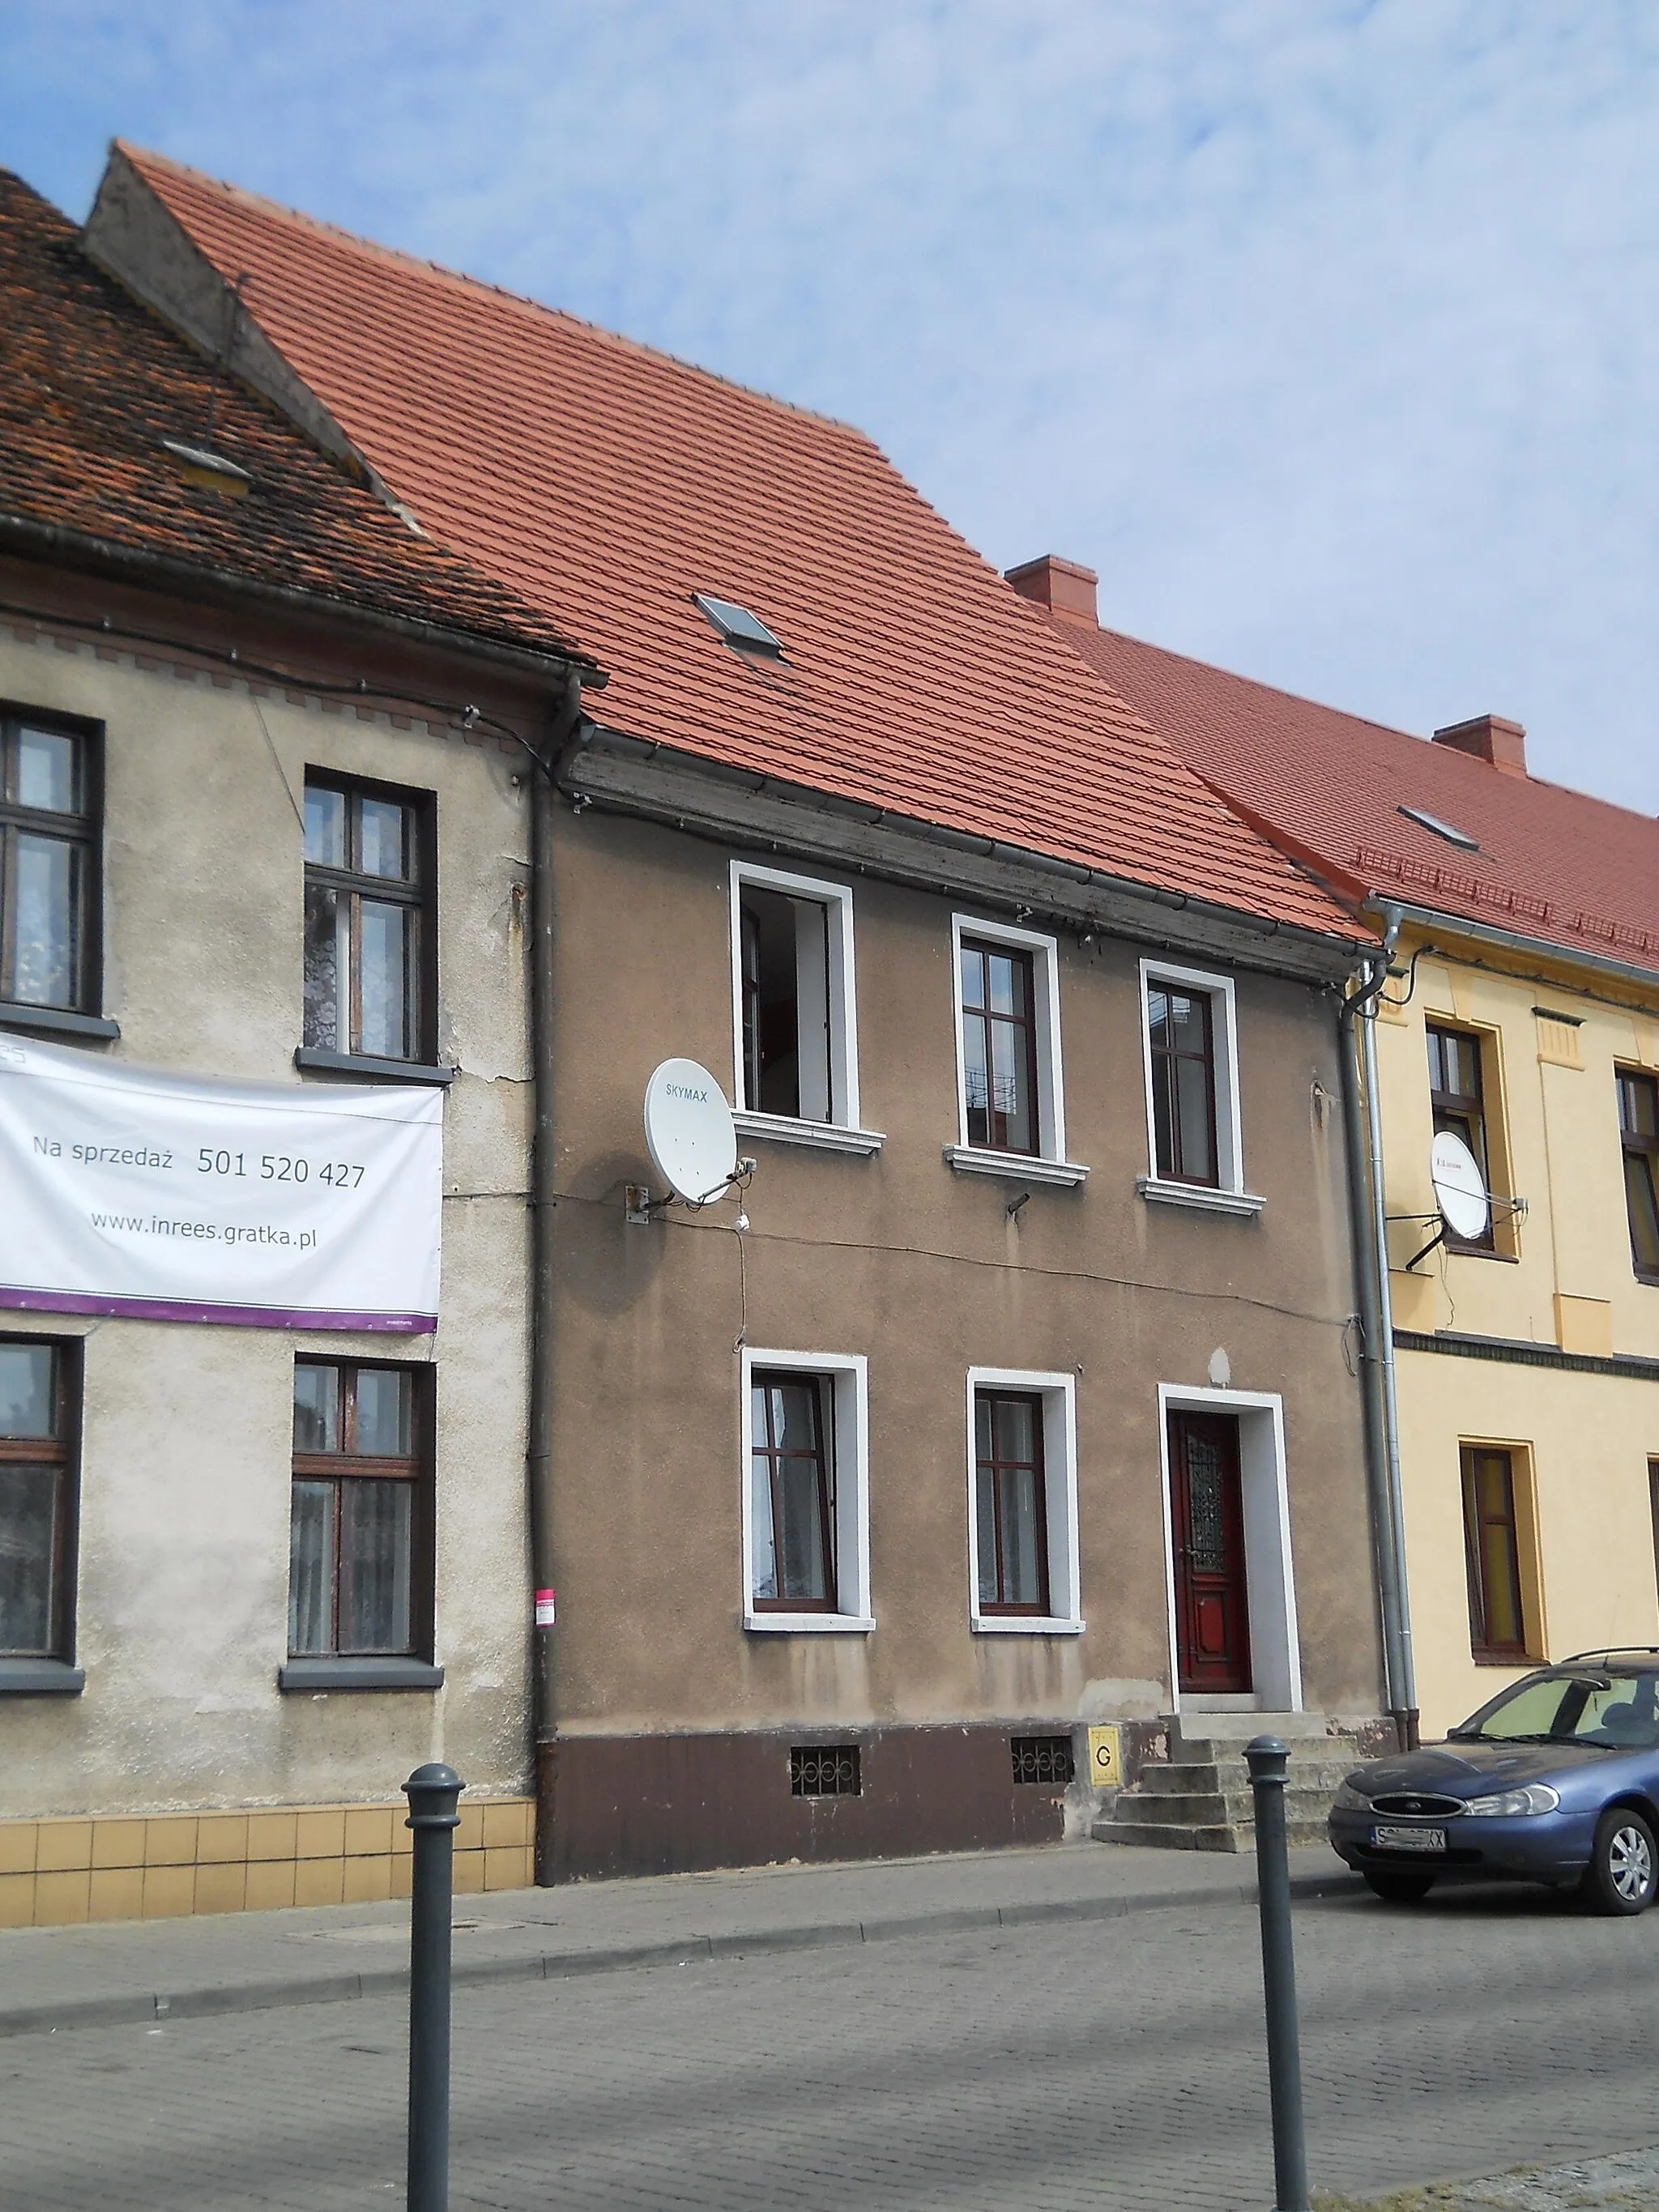 Photo showing: Toszek, Rynek 18 - dom z 1 poł. XIX w. (zabytek nr A/332/60 z 10.03.1960)